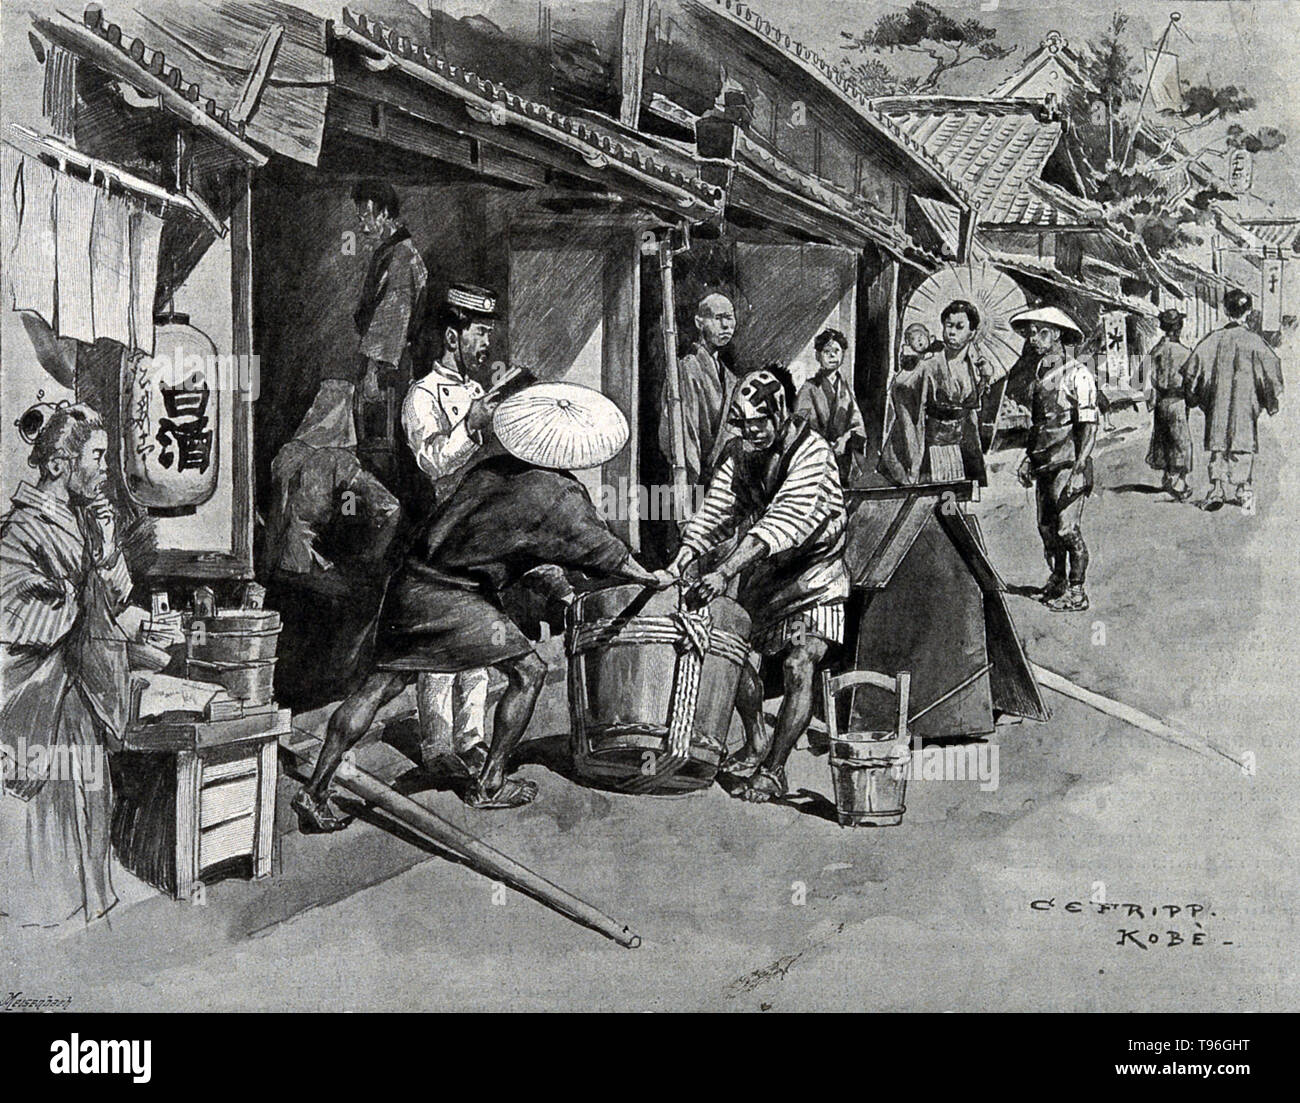 L'élimination de la mort, sous surveillance policière pendant une épidémie de choléra au Japon. La troisième pandémie de choléra principalement touché la Russie, avec plus d'un million de morts. En 1852, le choléra s'est propagé vers l'est jusqu'à l'Indonésie, et plus tard a été effectuée en Chine et au Japon en 1854. Les Philippines ont été infectées en 1858 et en Corée en 1859. En 1859, une épidémie au Bengale ont contribué à la transmission de la maladie par les voyageurs et les troupes de l'Iran, l'Iraq, l'Arabie et la Russie. Banque D'Images